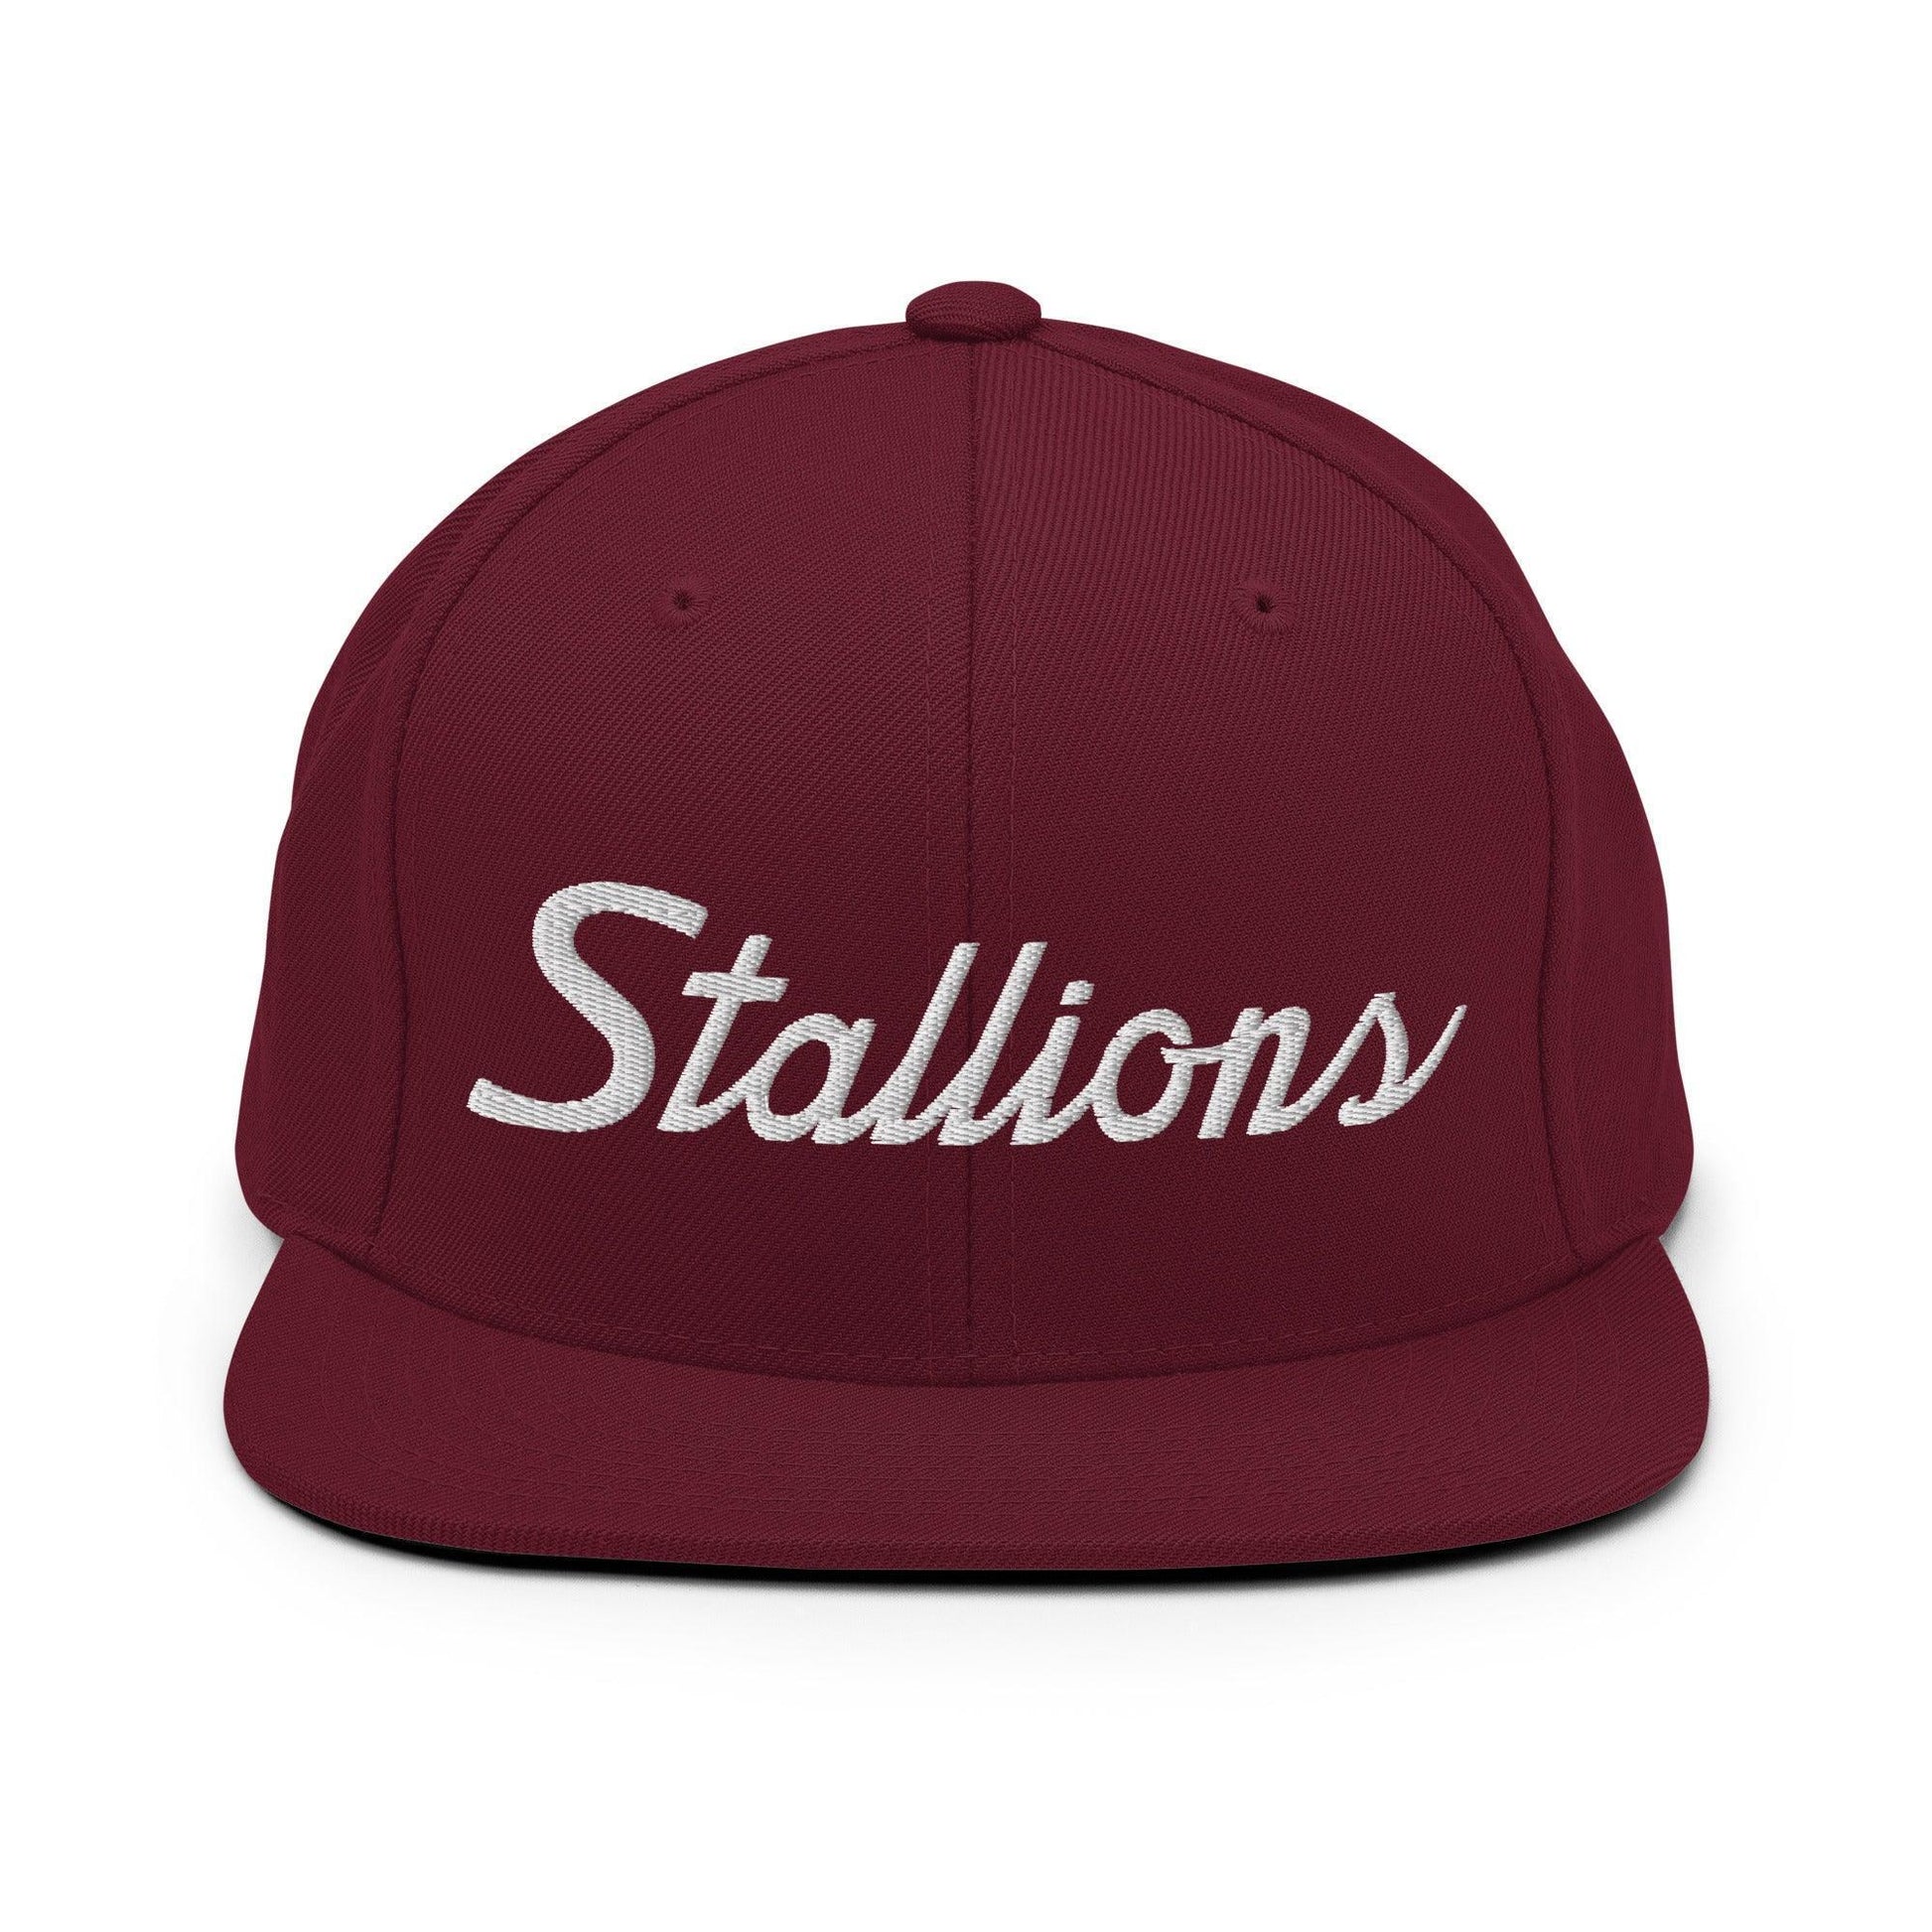 Stallions School Mascot Script Snapback Hat Maroon